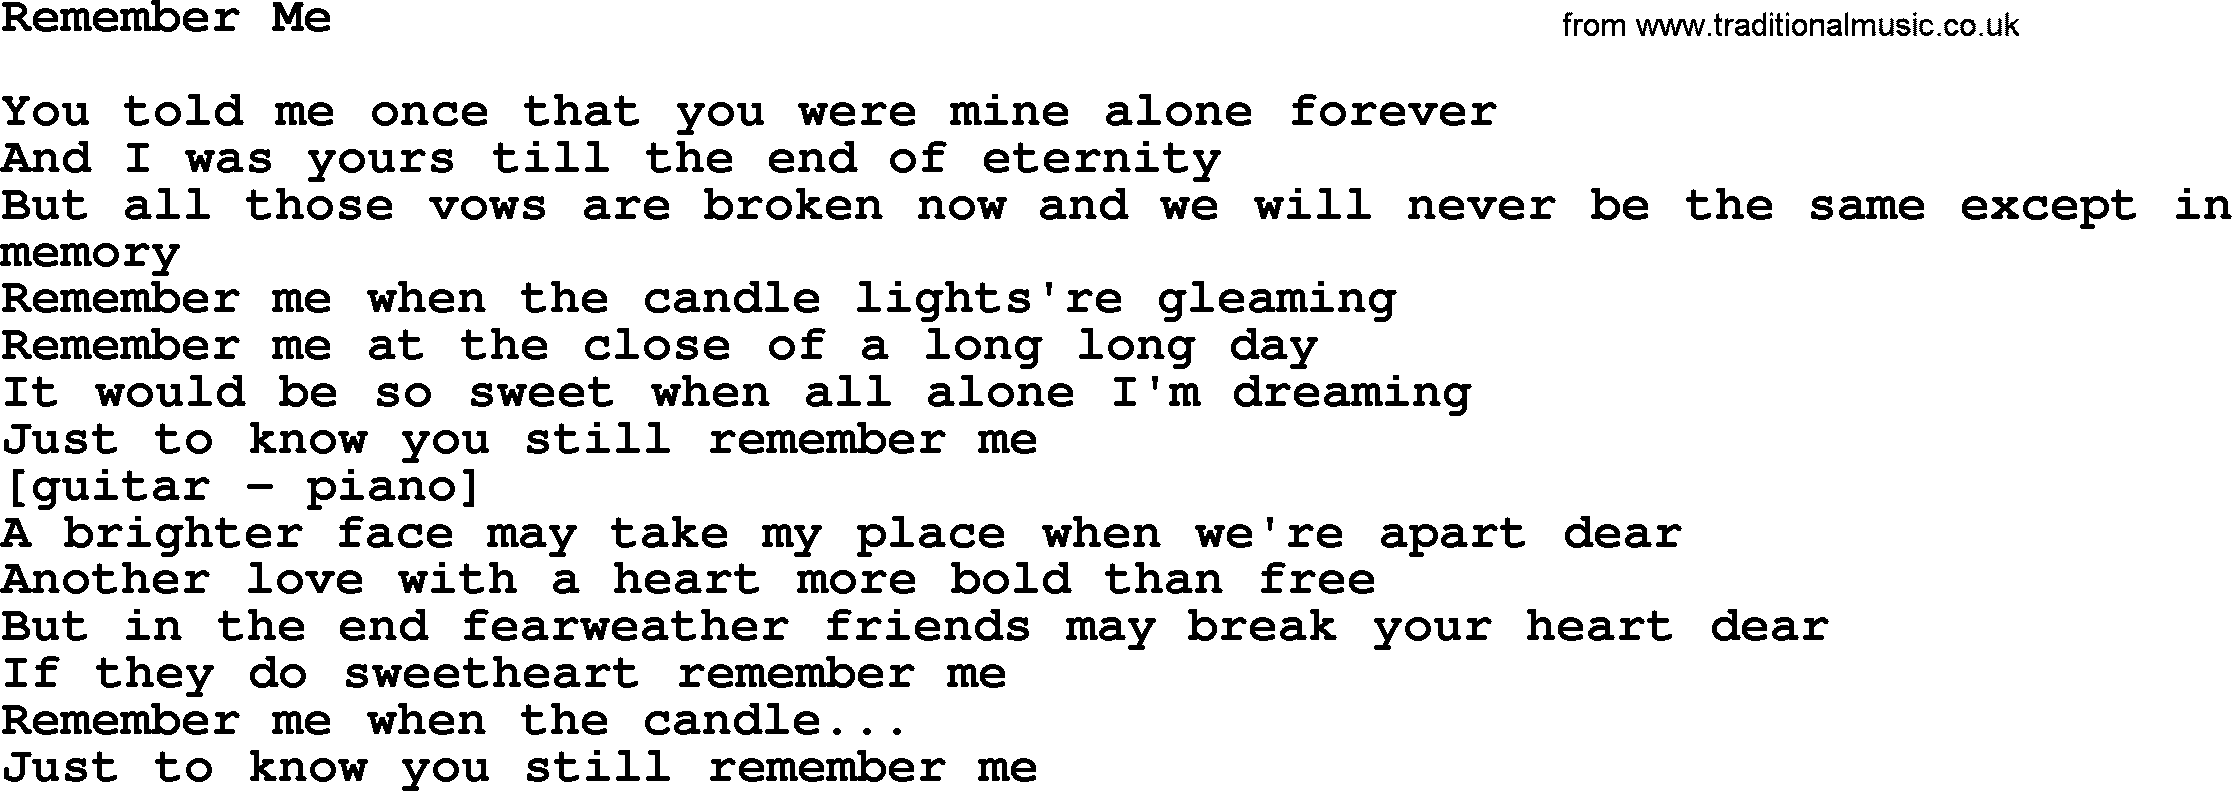 Willie Nelson song: Remember Me lyrics